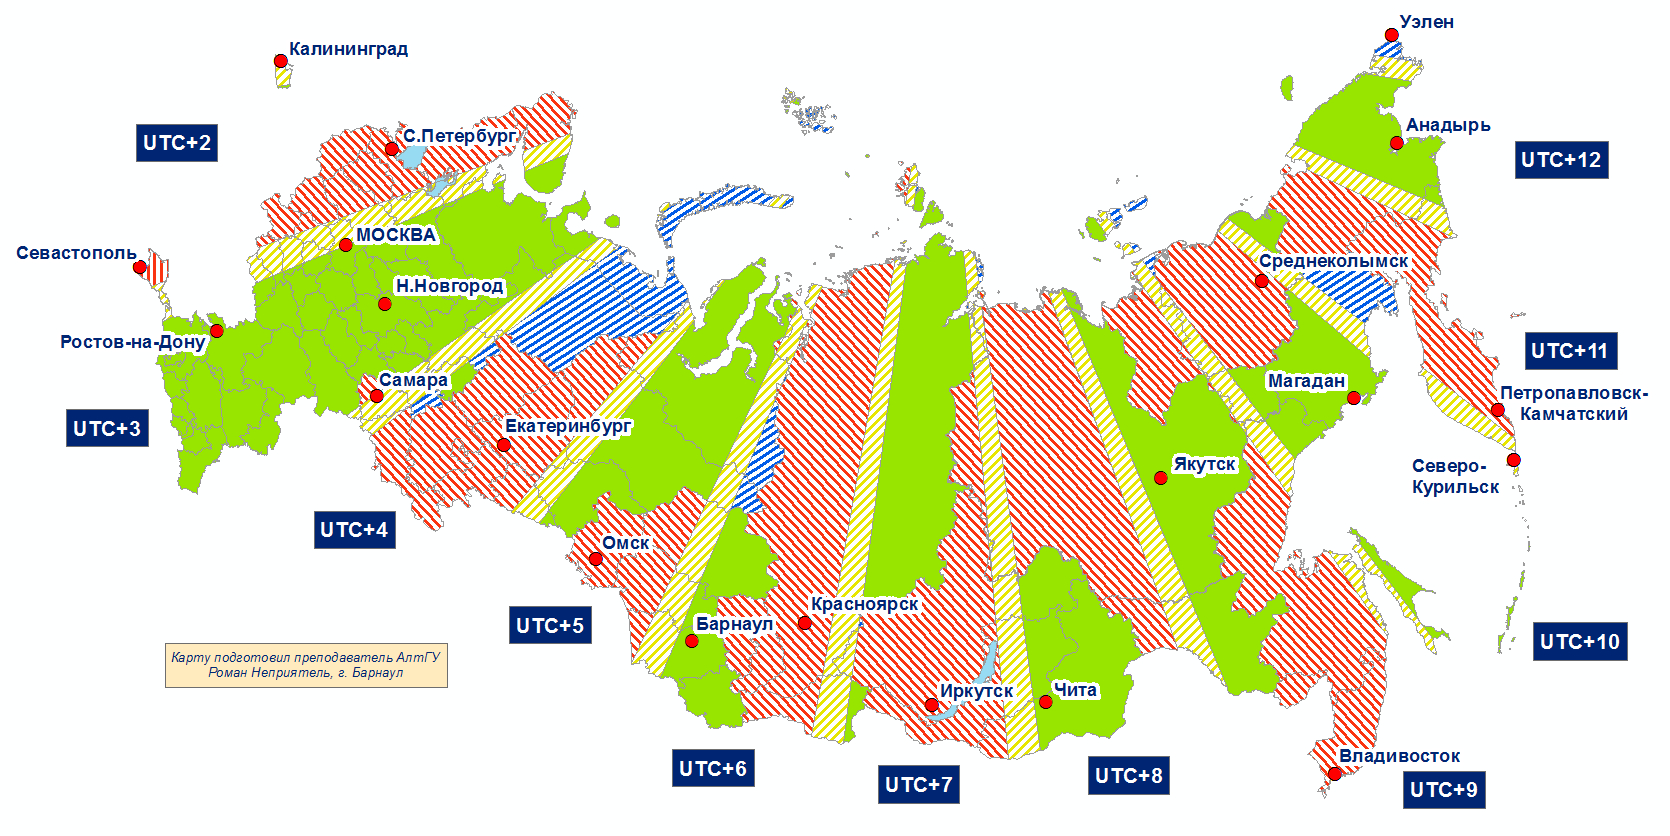 Разница во времени якутск санкт петербург. Часовые пояса UTC. Часовые пояса России на карте. Карта часовых поясов России 2022. Временные зоны UTC.